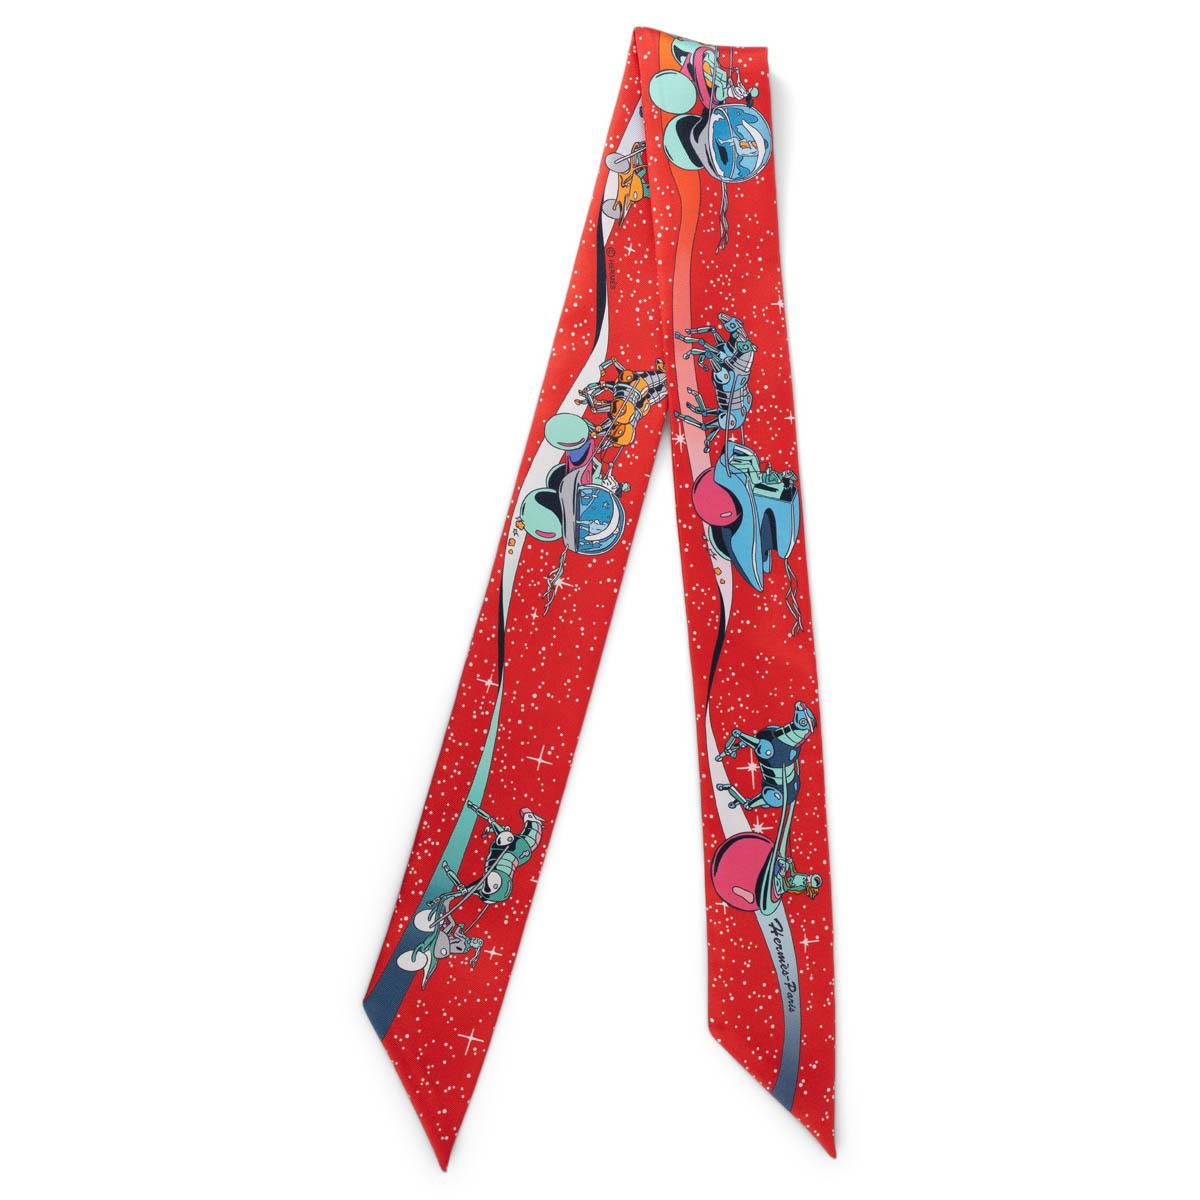 100% authentischer Hermès Space Derby Twilly von Ugo Bienvenu aus rotem Seidenköper mit Details in Türkis, Orange, Blau, Rosa und Weiß. Wurde getragen und ist in ausgezeichnetem Zustand.  

Messungen
Breite	5cm (2in)
Länge	86cm (33.5in)

Alle unsere